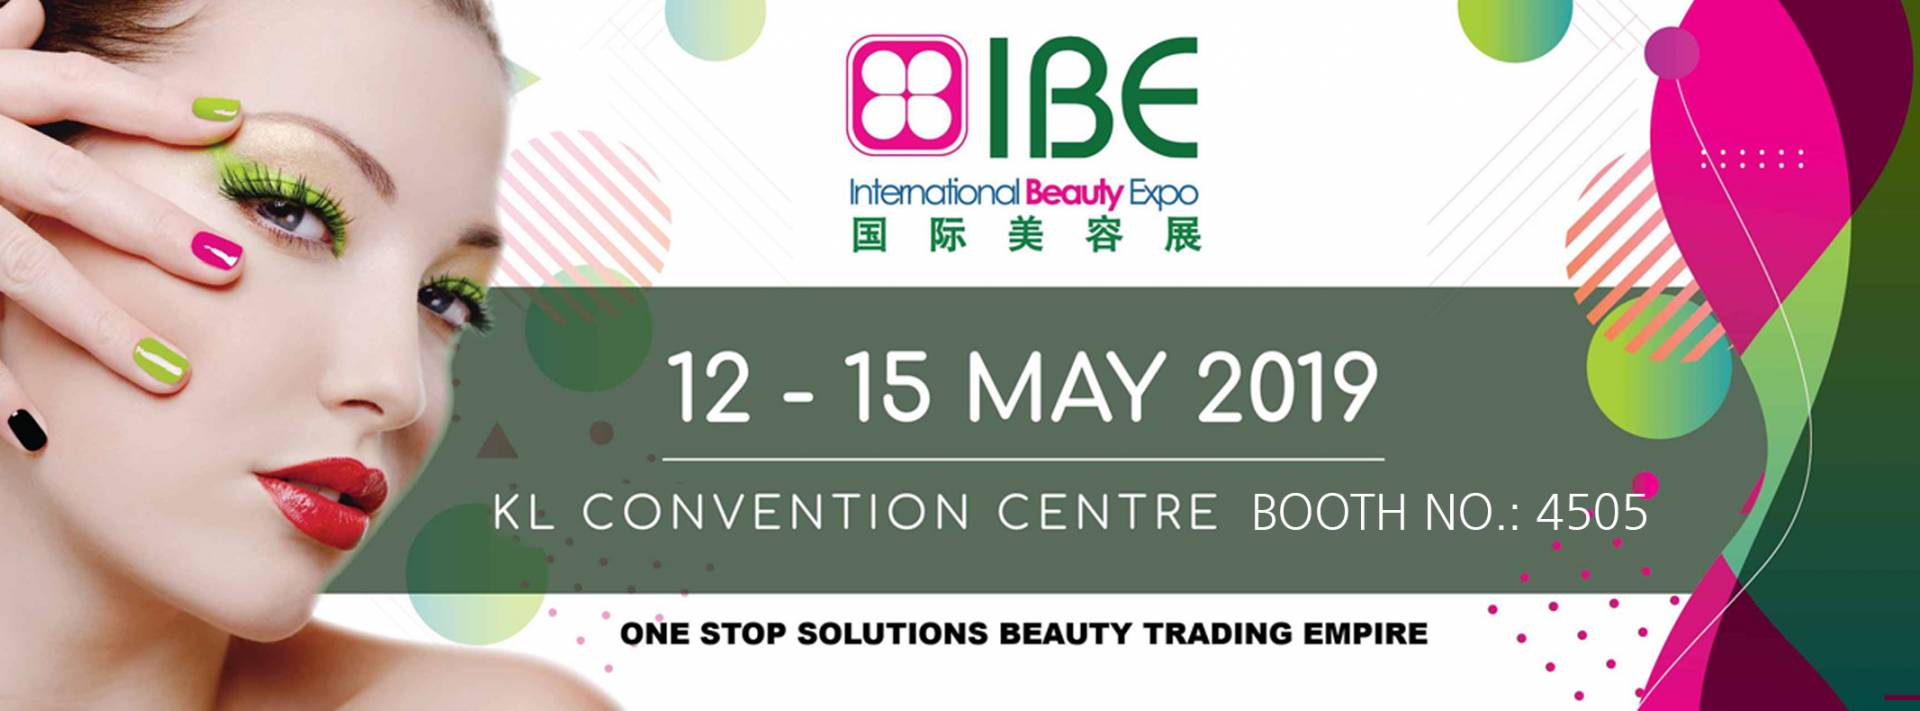 Exposition Internationale de Beauté de Malaisie 2019